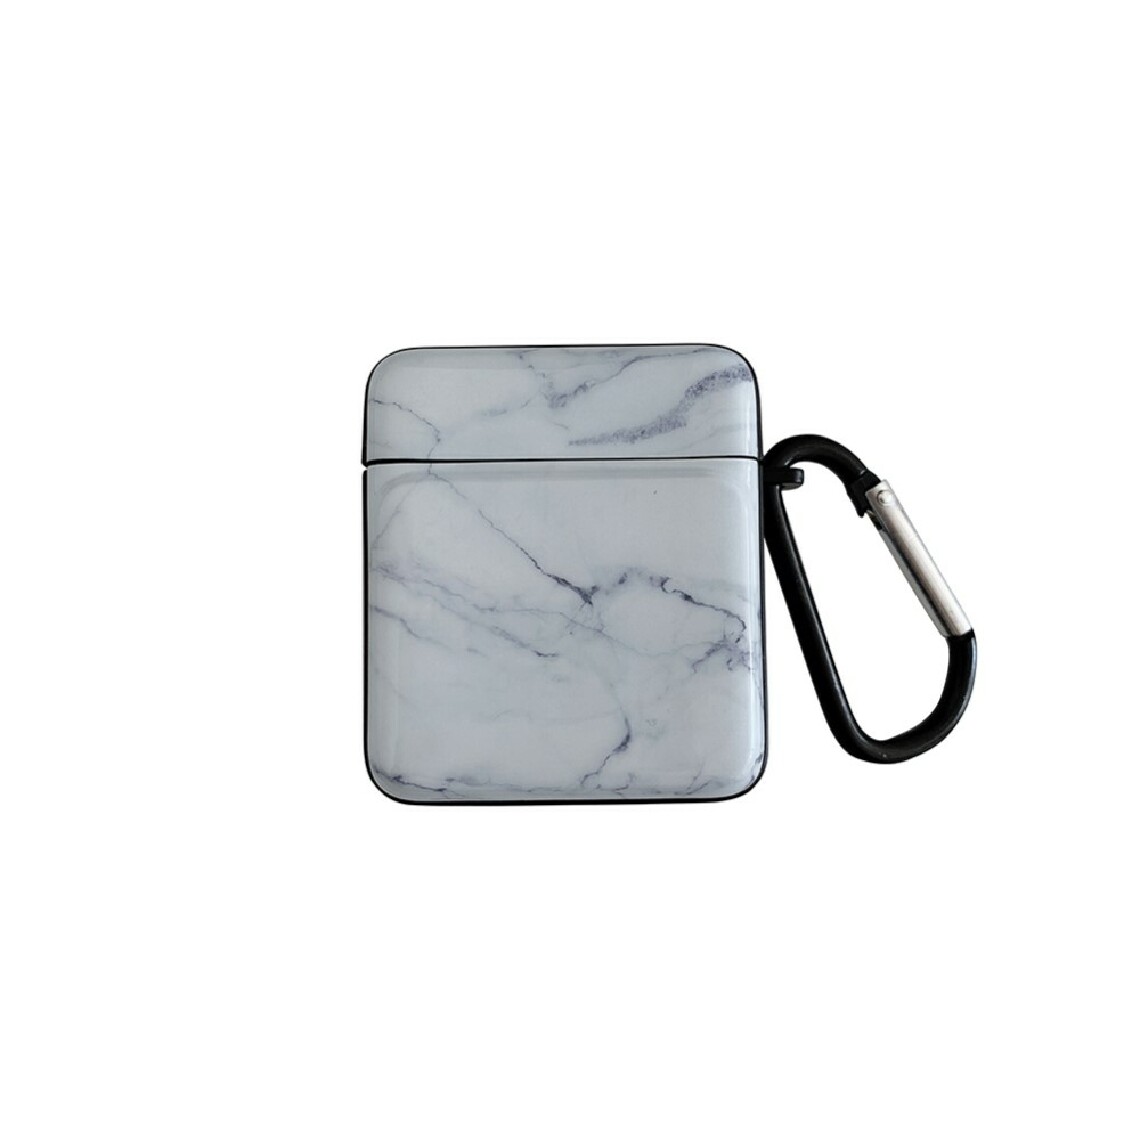 Other - Coque en TPU motif de marbre IMD simple blanc pour votre Apple AirPods with Charging Case (2016)/(2019) - Coque, étui smartphone